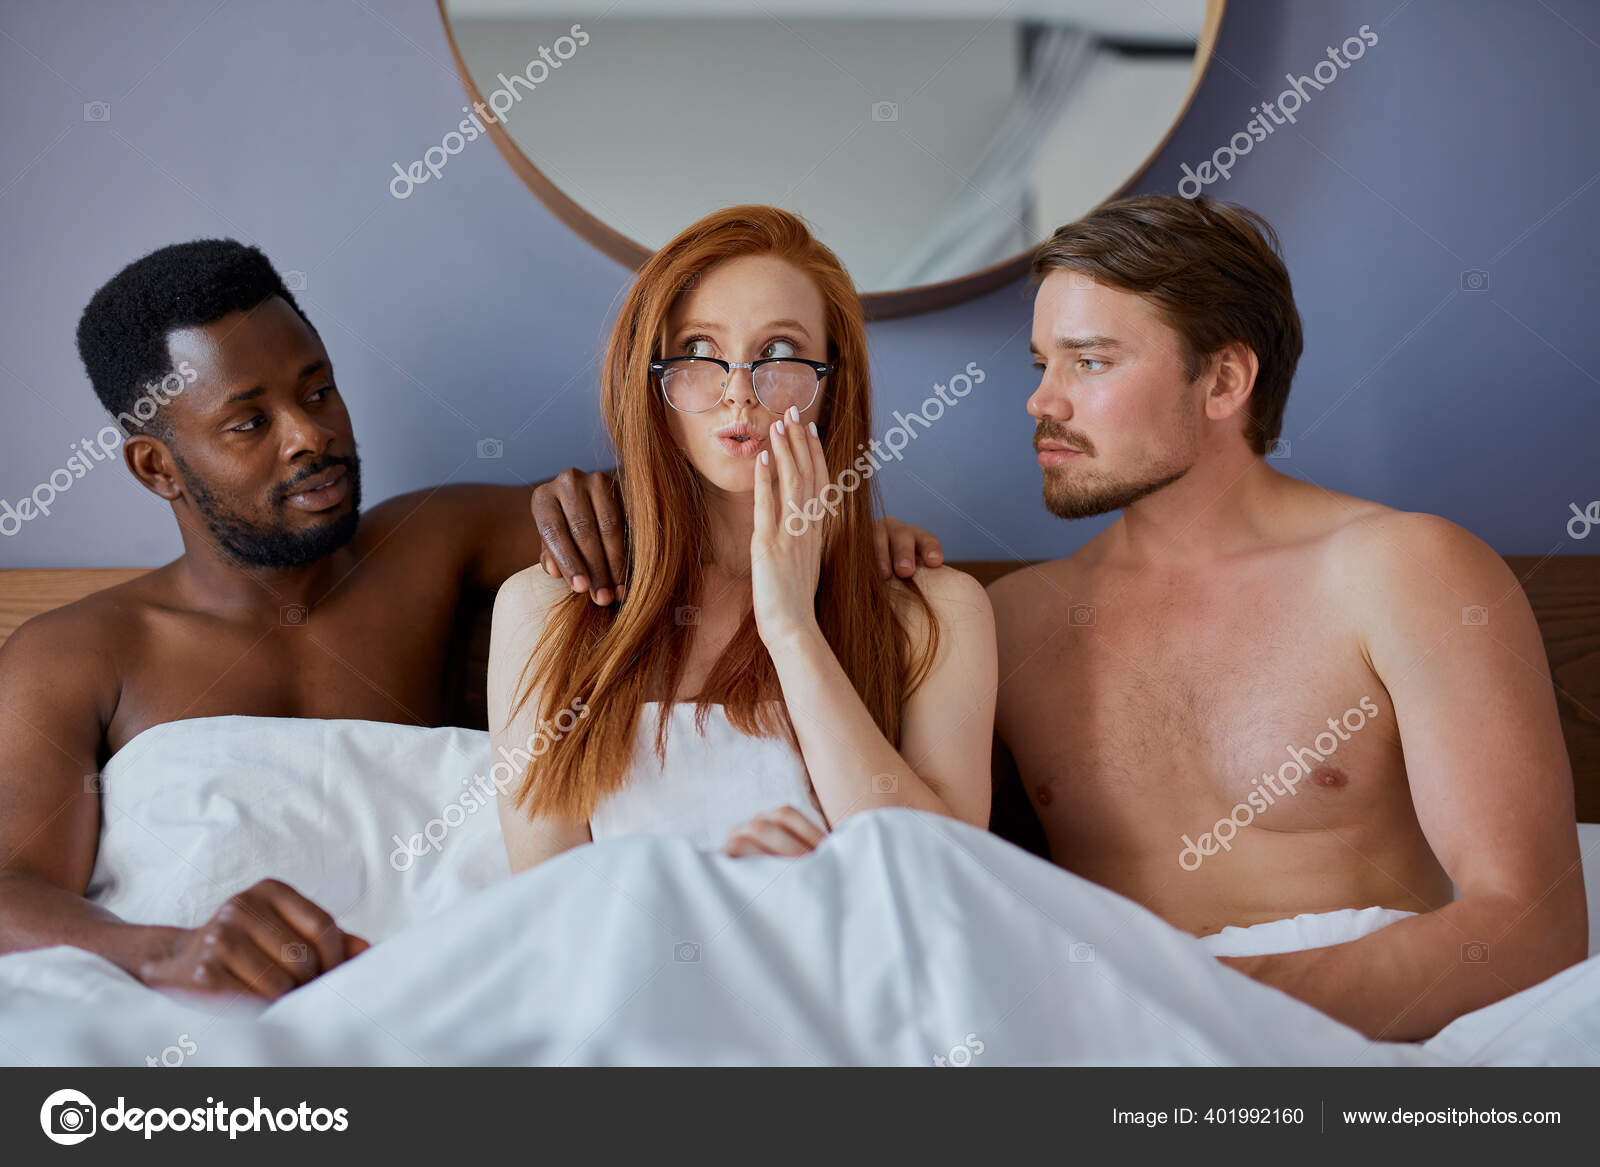 Threesome concept photo